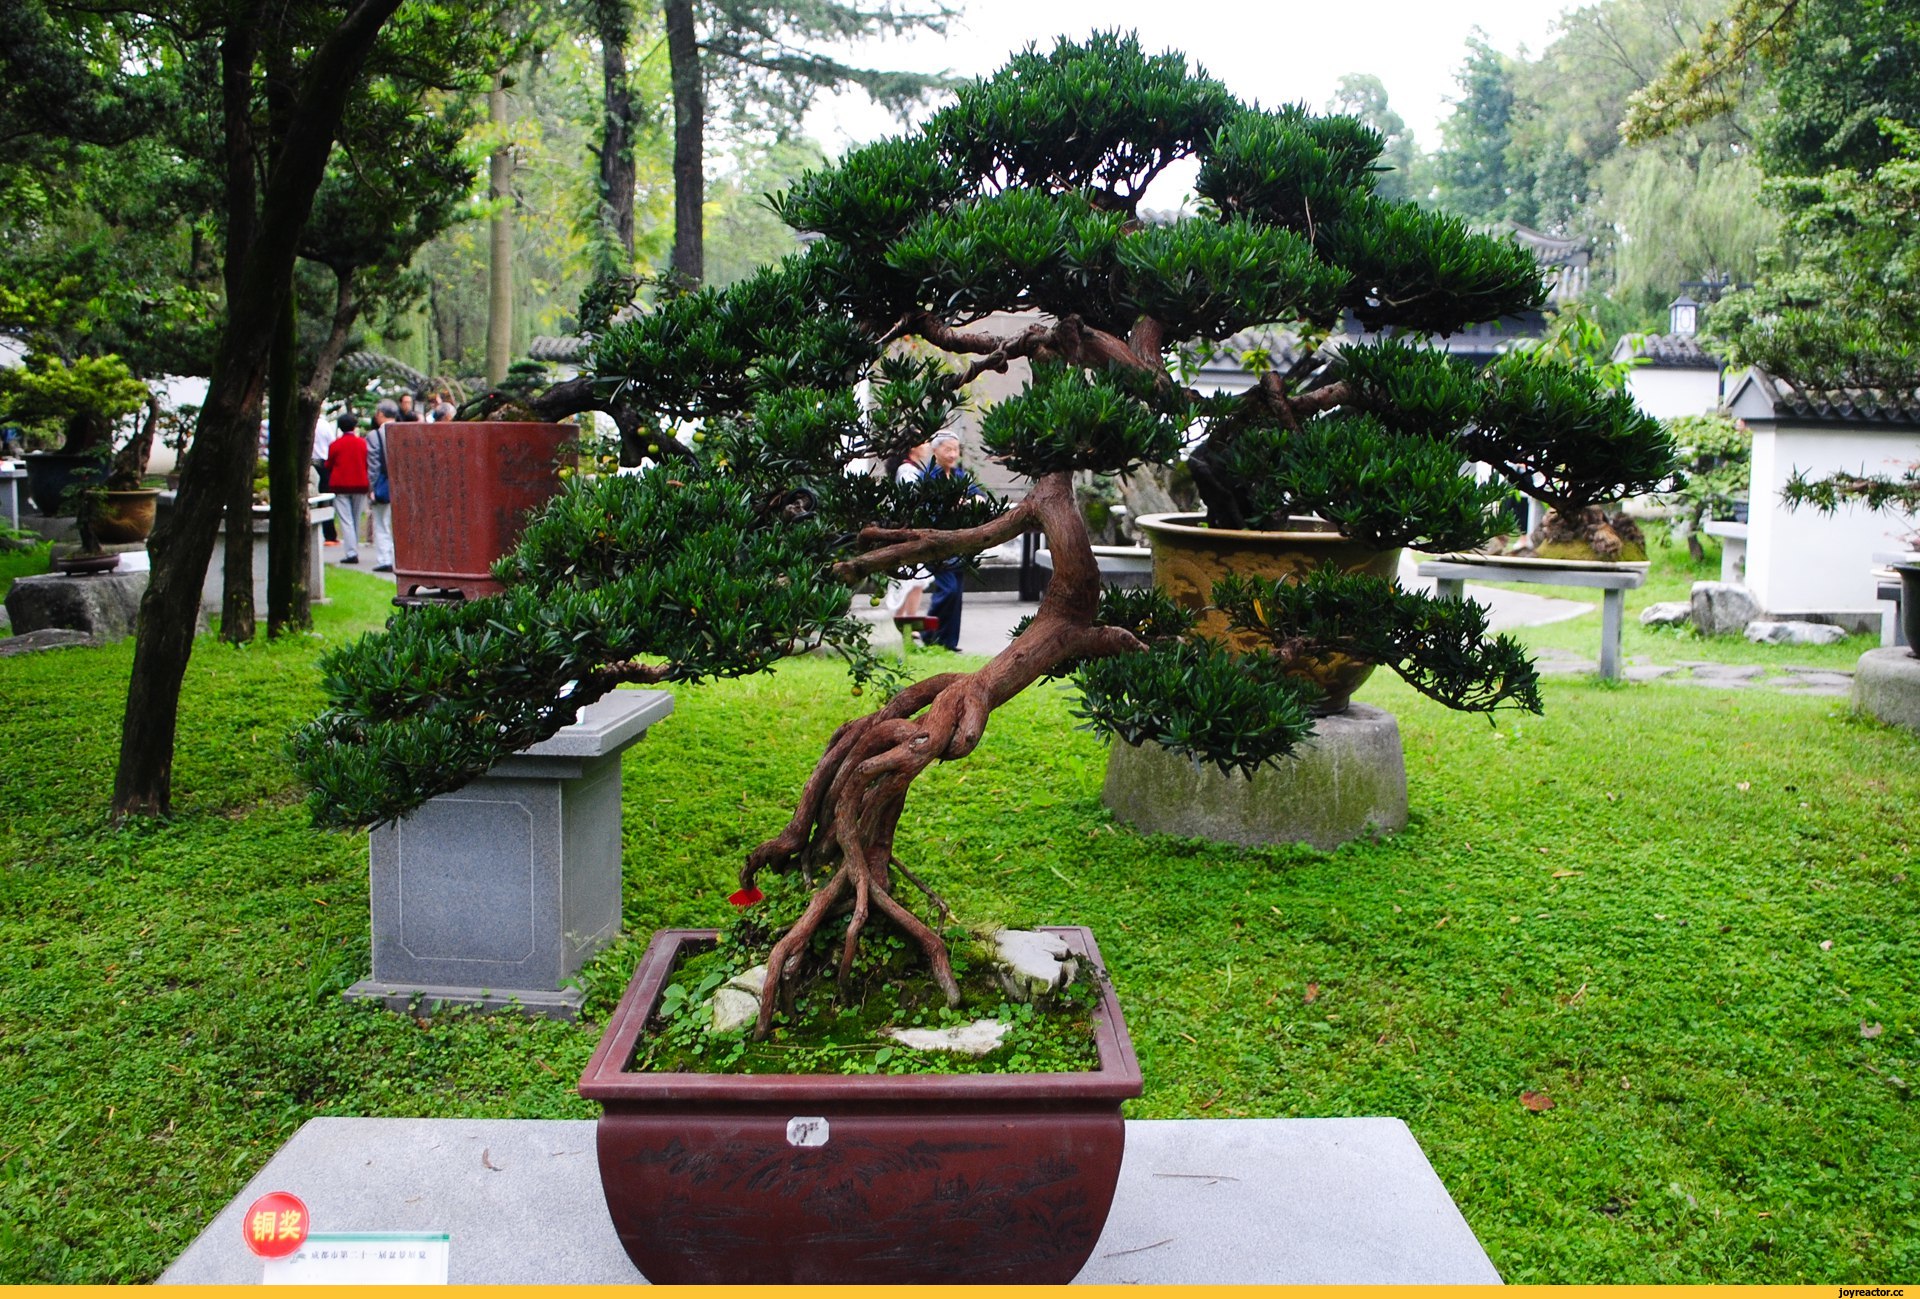 Китайское дерево в горшке фото